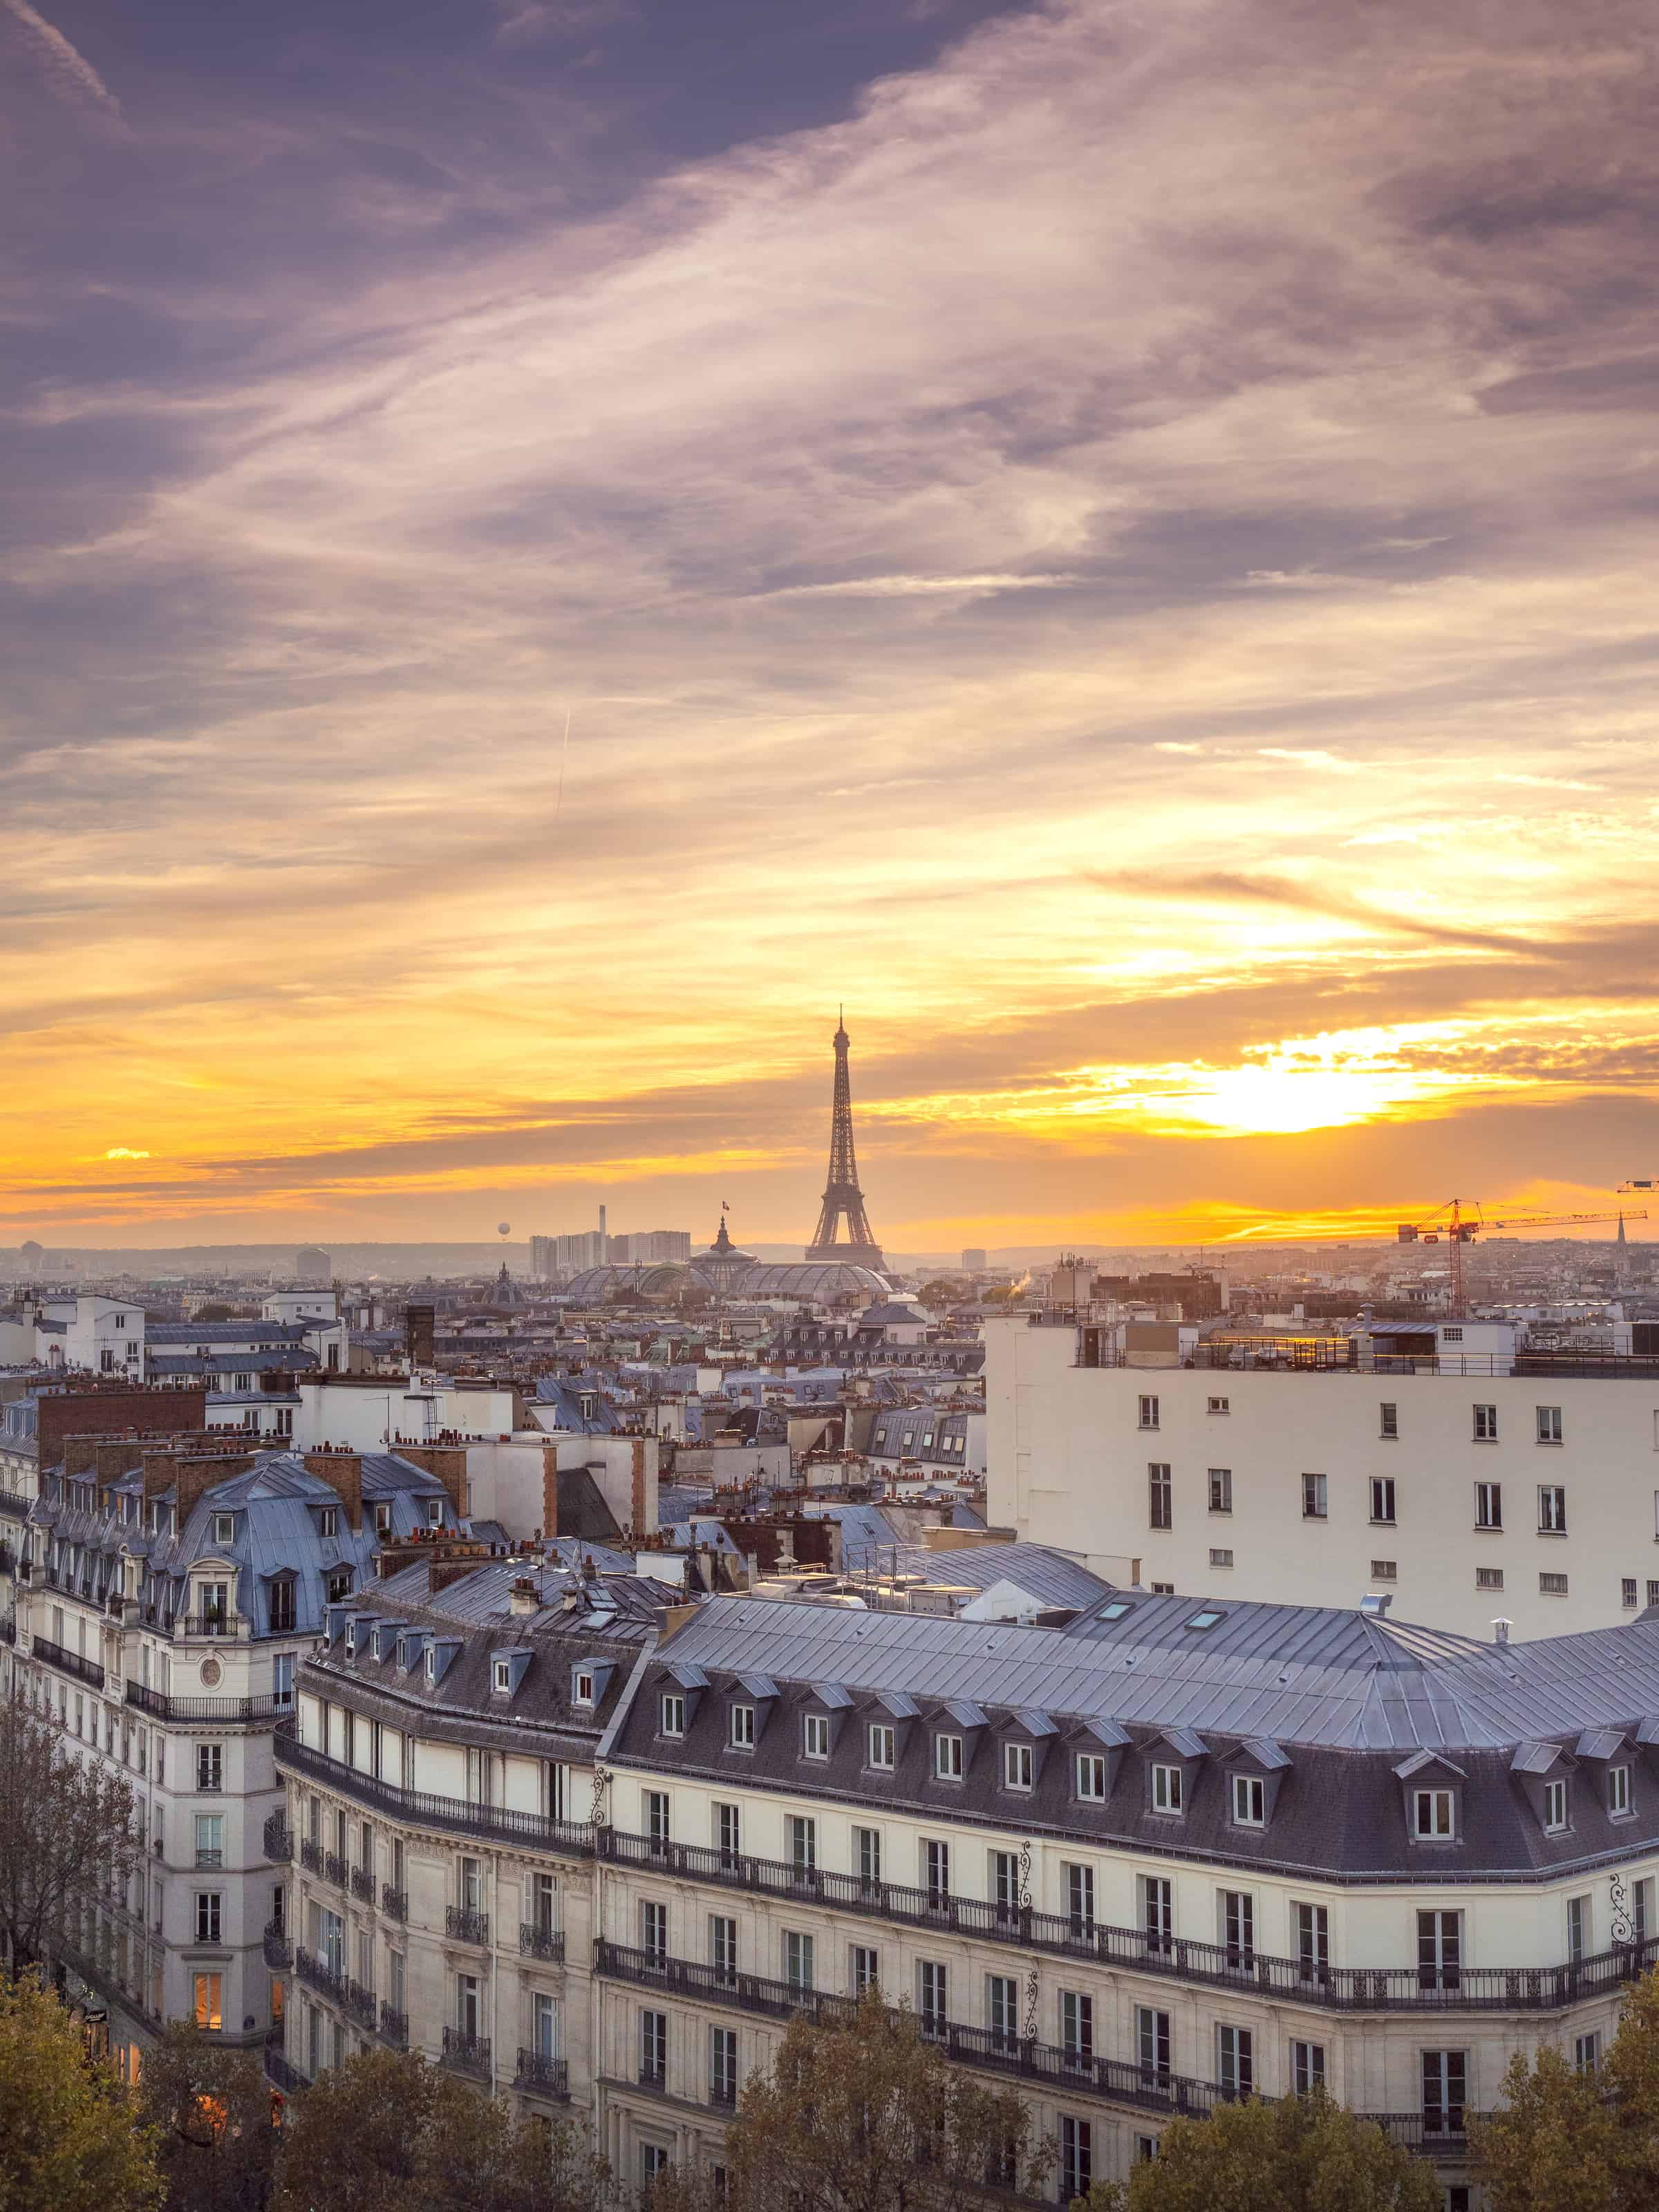 Paris' Best Rooftop Bars for Sunset Views - HiP Paris Blog